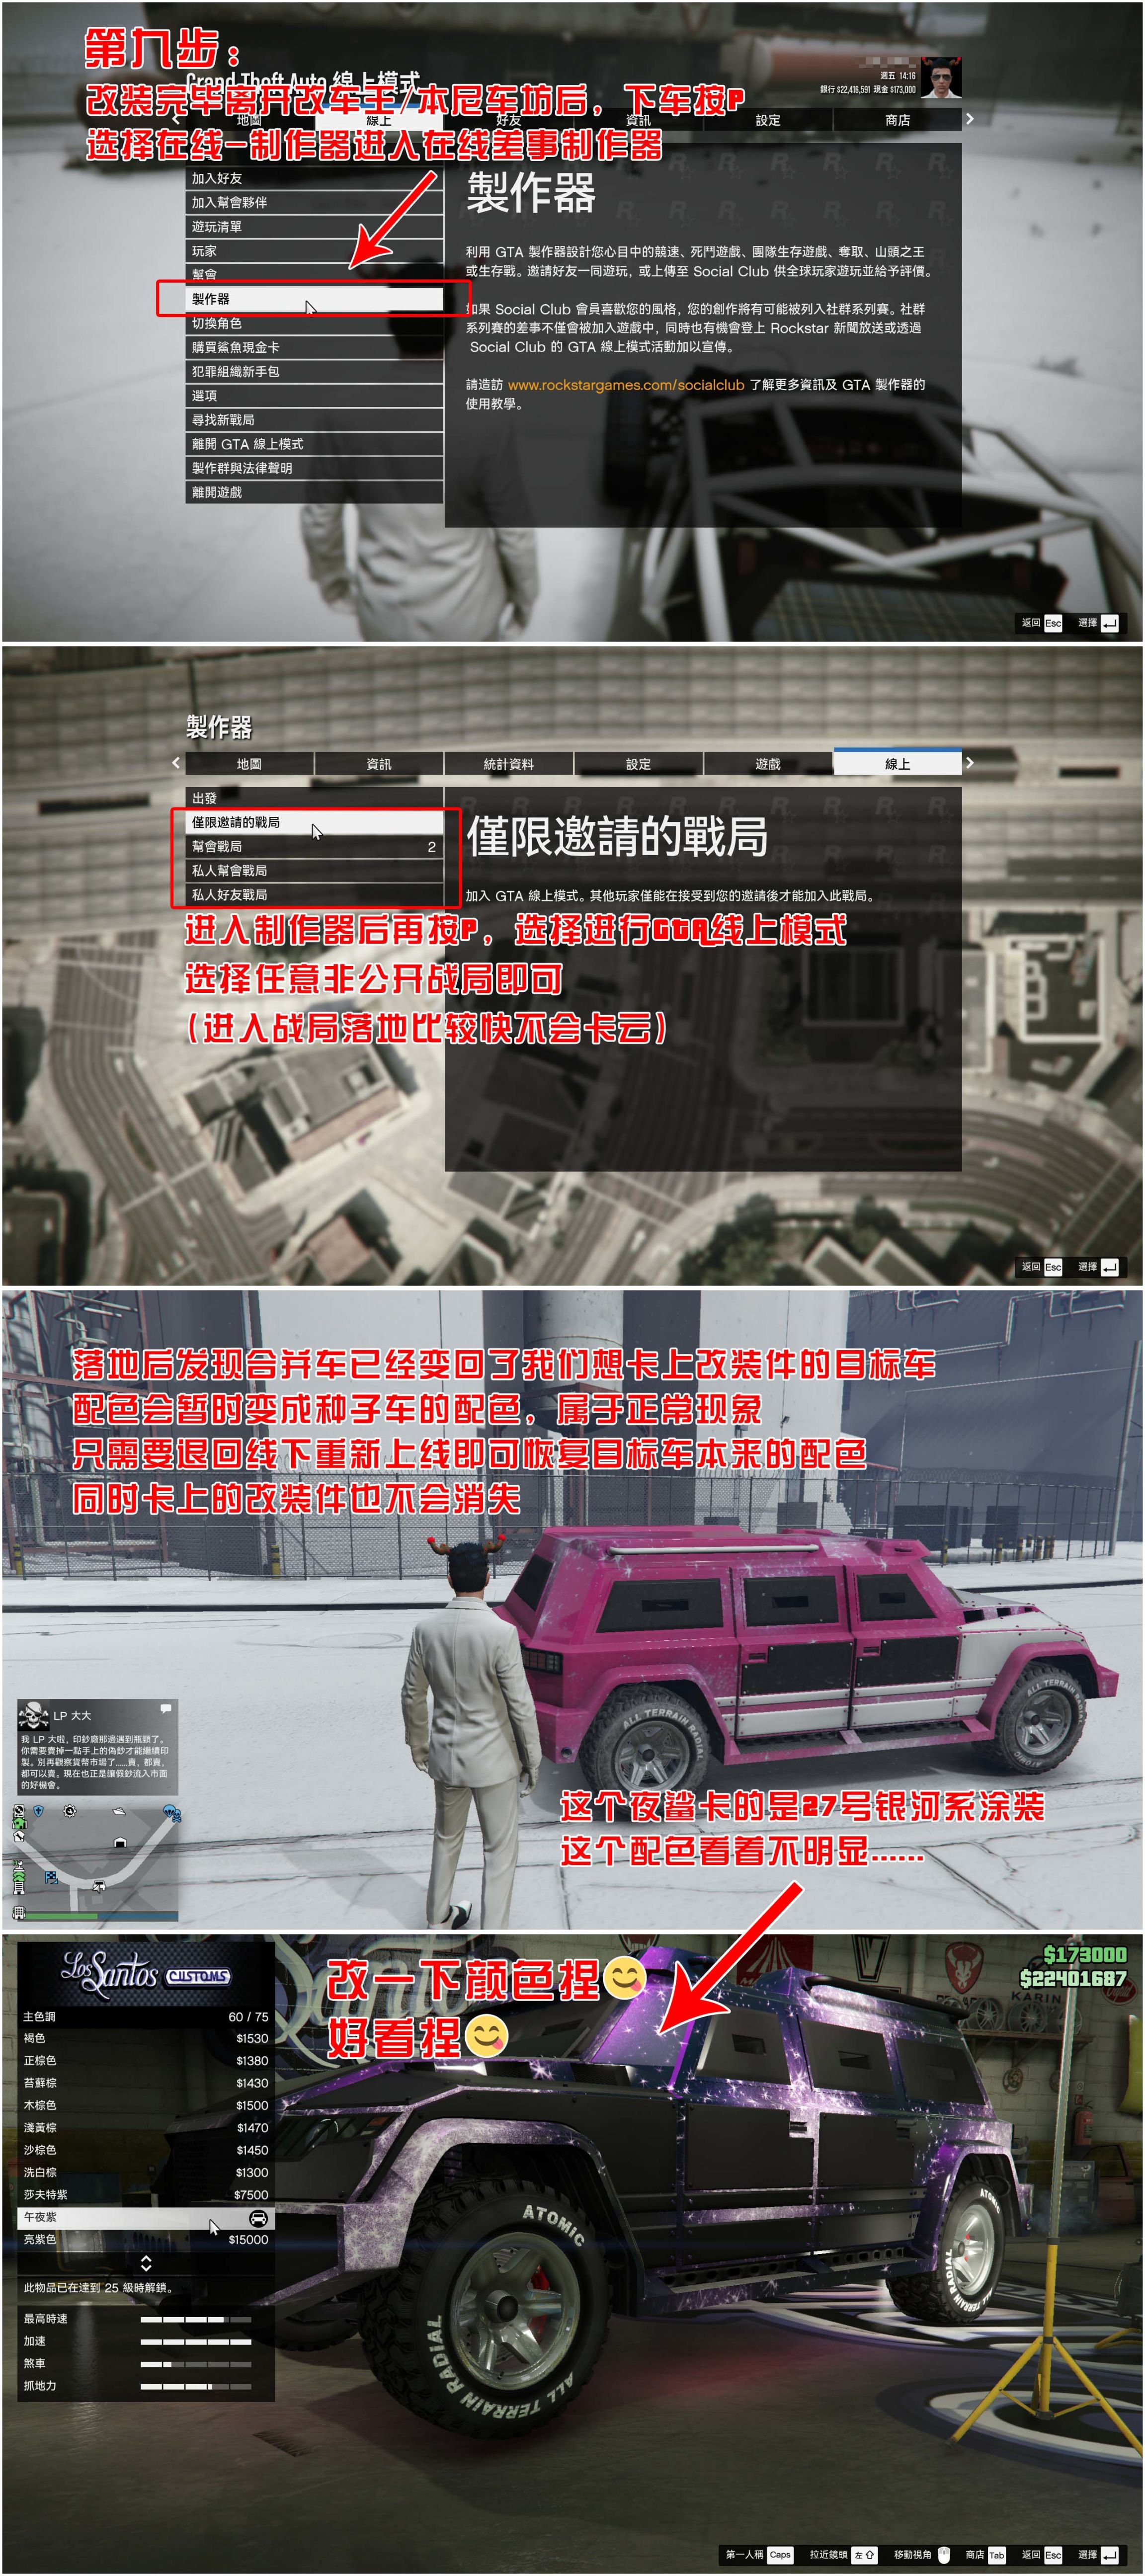 【侠盗猎车手5】GTA 在线模式攻略：获取载具隐藏涂装&复制车&变造外贸载具-第9张